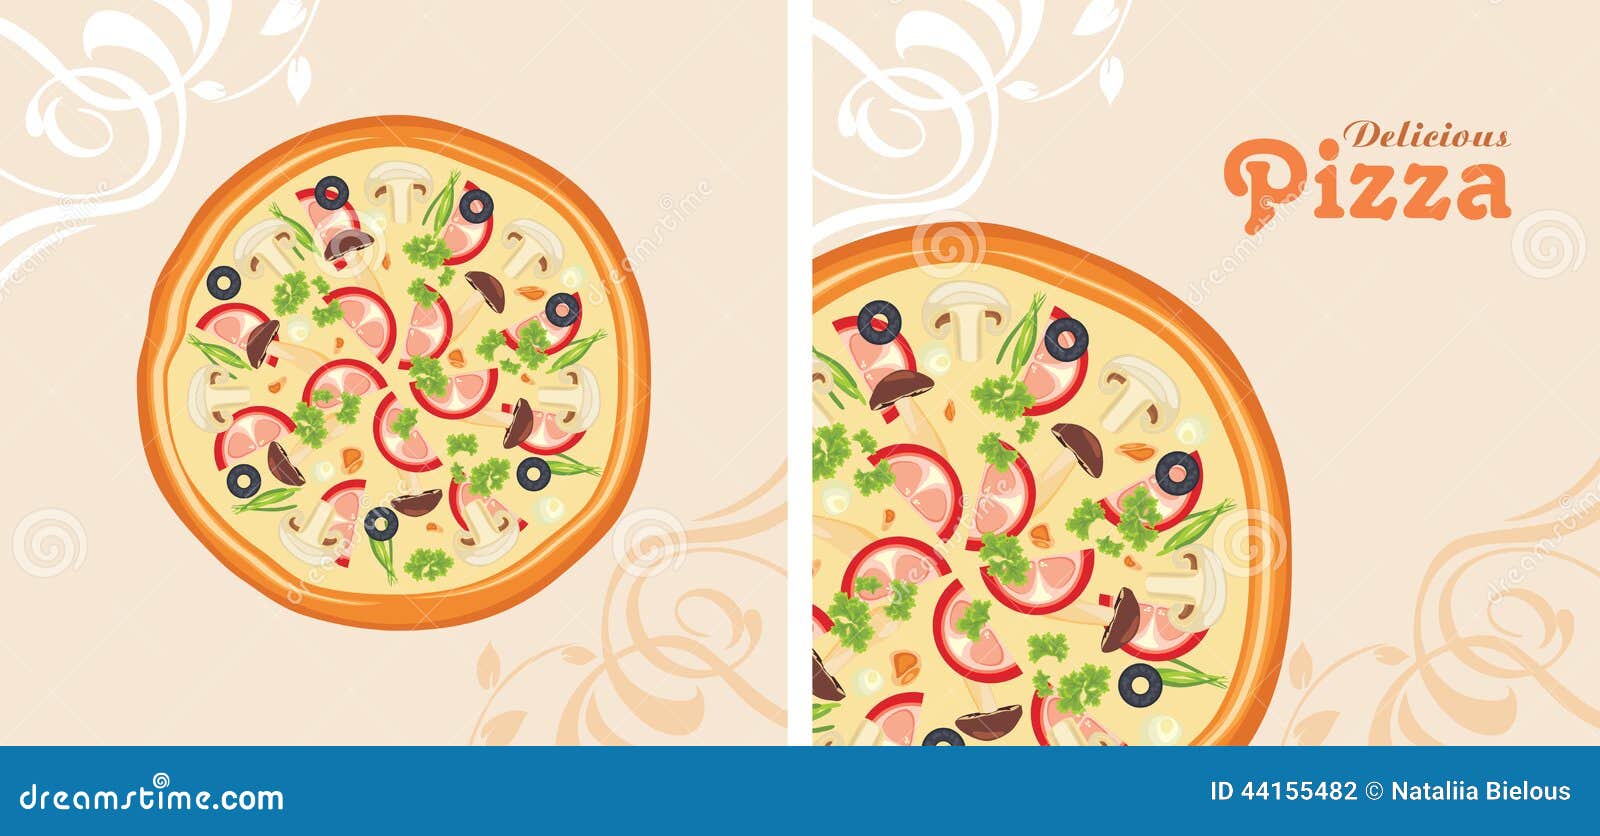 Pizza là món ăn ưa thích của nhiều người, vì vậy thiết kế menu pizza đặc biệt quan trọng. Hãy tìm hiểu những mẫu thiết kế menu pizza đẹp mắt và ấn tượng, và cho khách hàng của bạn cảm nhận được sự chuyên nghiệp của nhà hàng mình. 